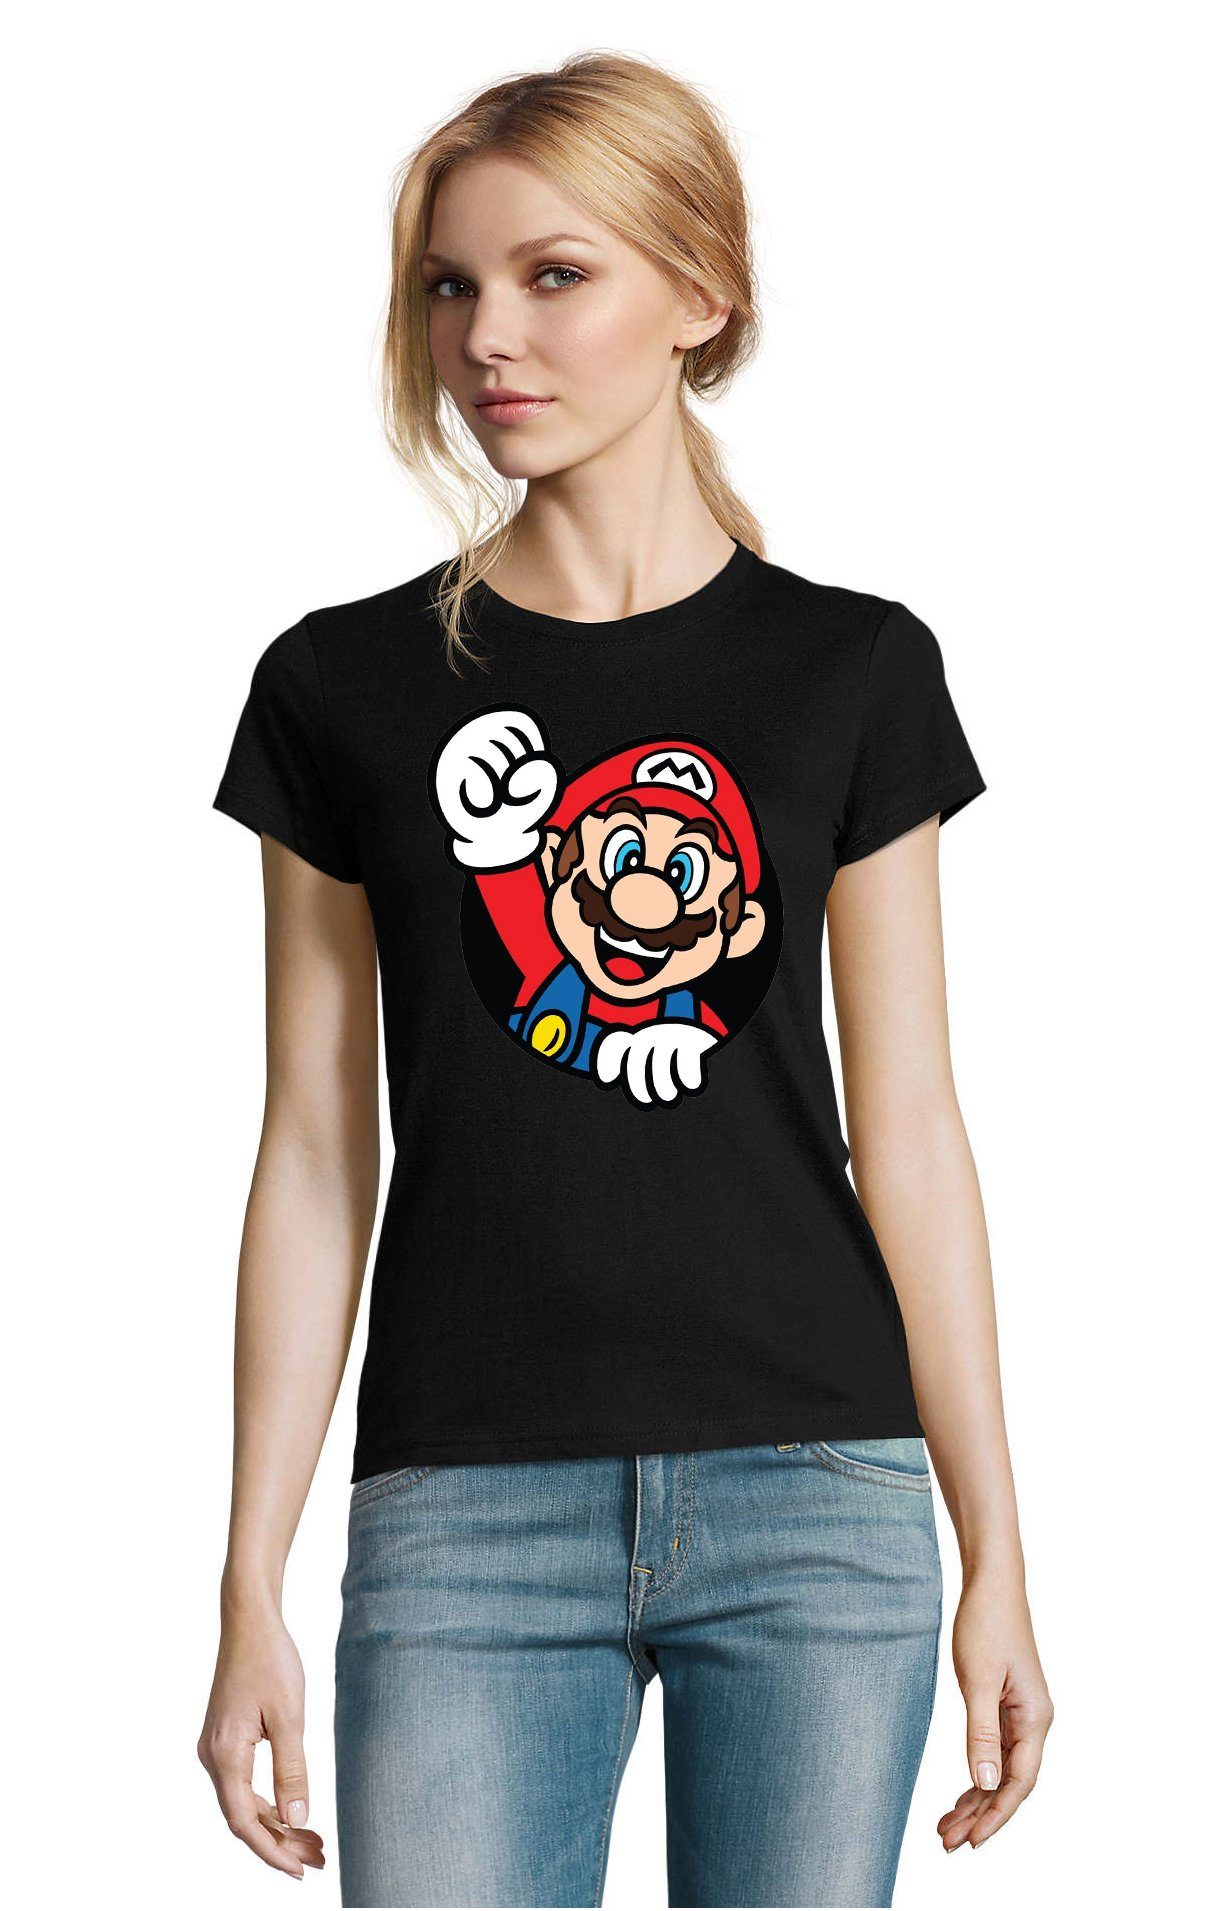 Blondie & Brownie T-Shirt Damen Super Mario Faust Nerd Konsole Gaming Spiel Nintendo Schwarz